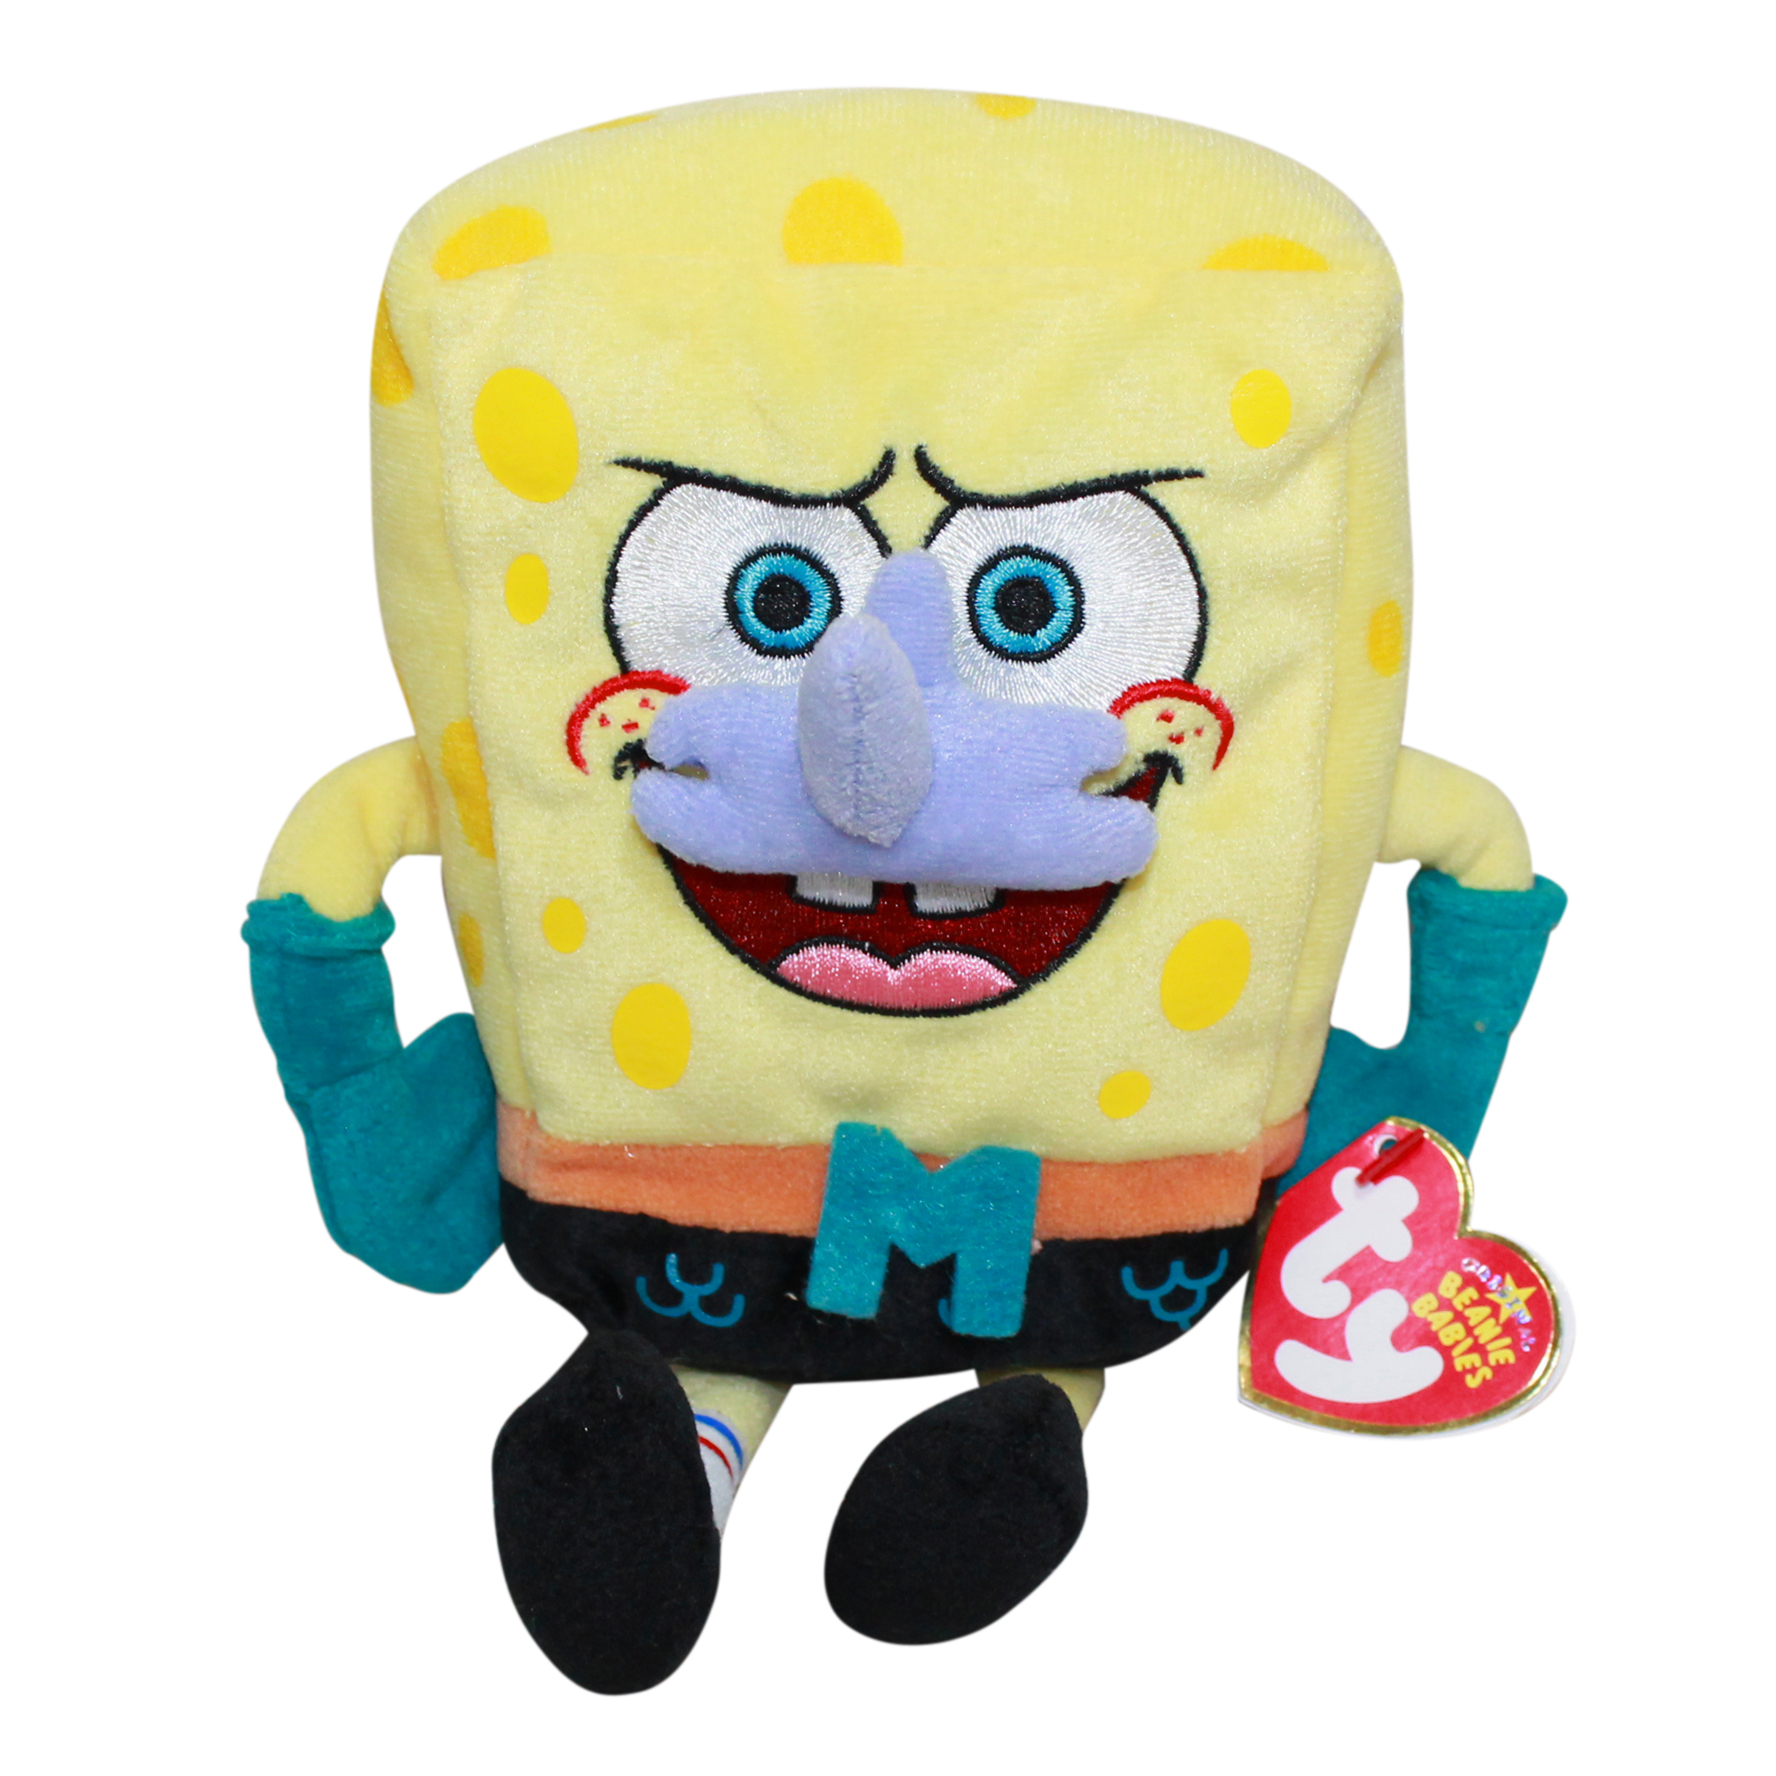 spongebob plushies